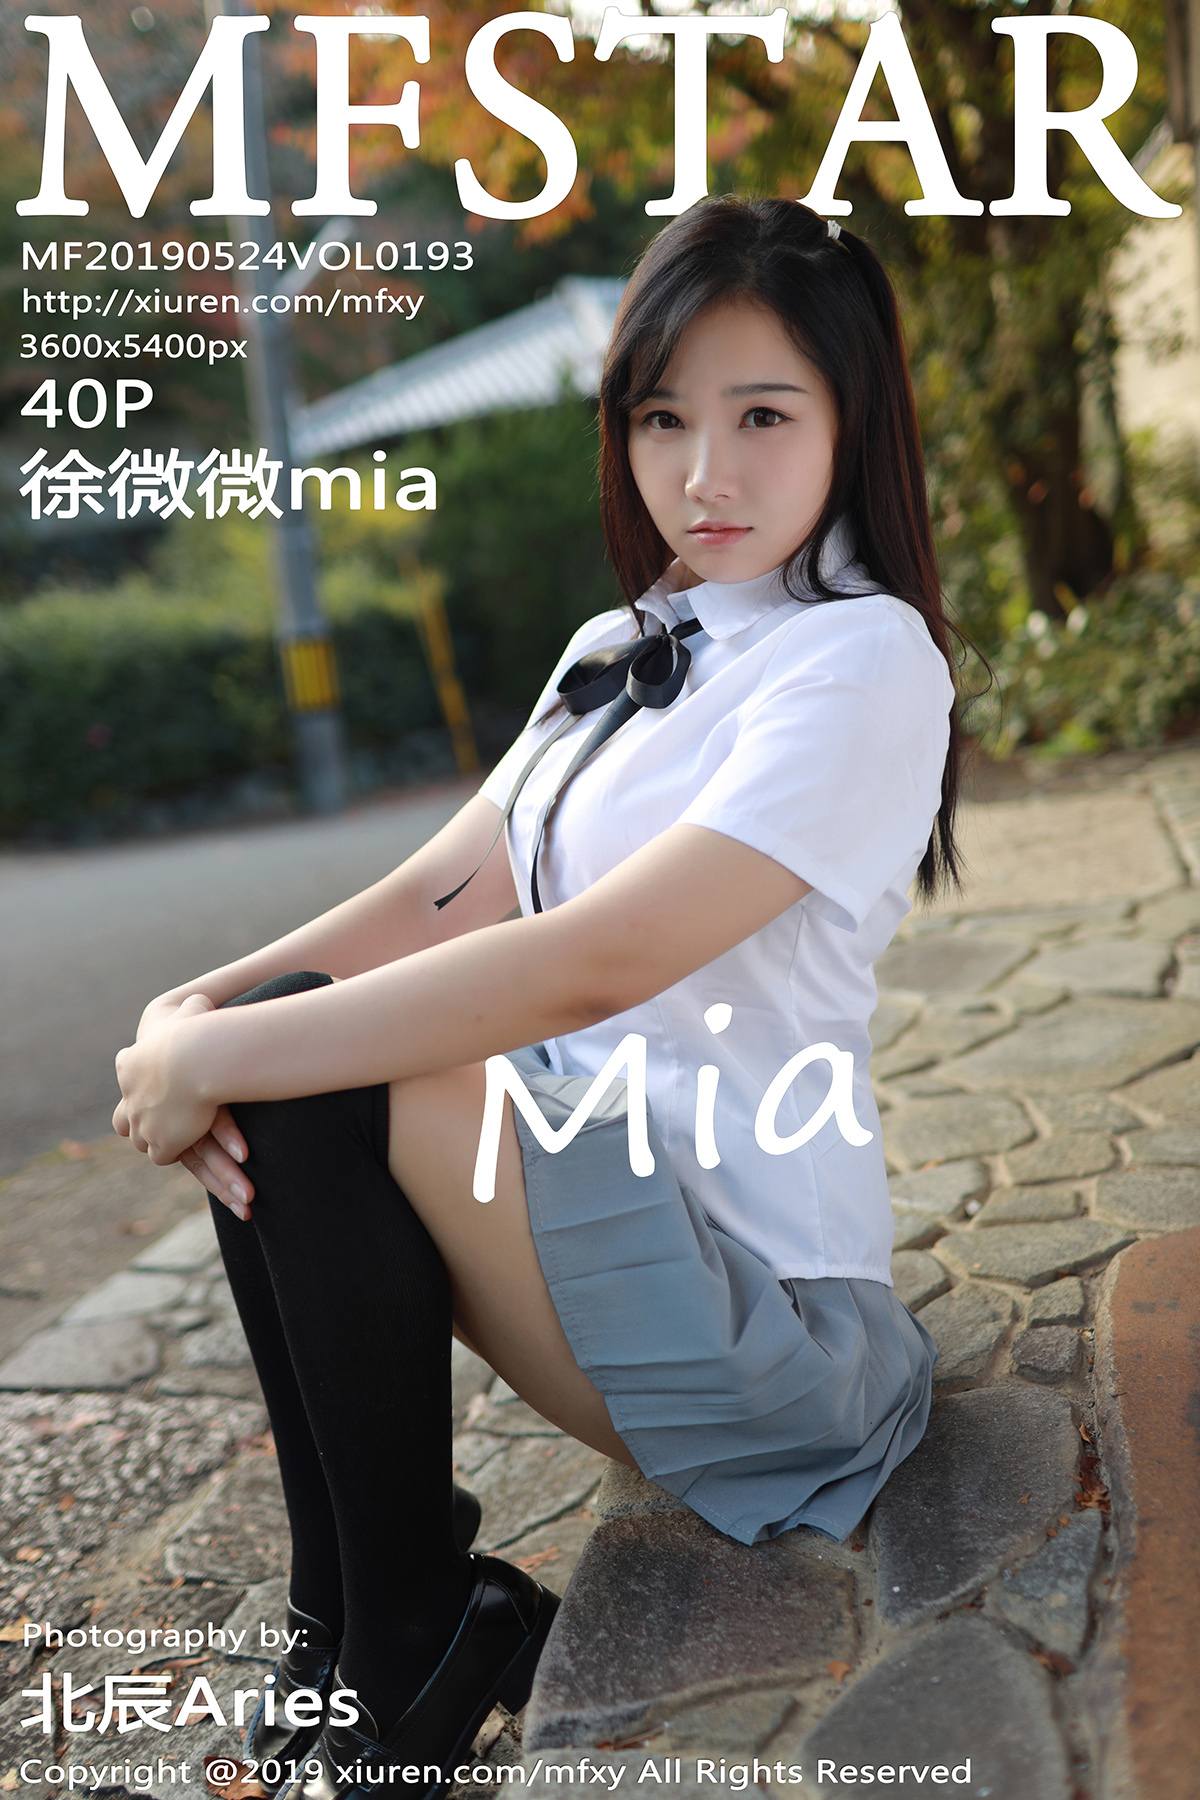 [mfstar model college] May 24, 2019 Vol.193 Xu weimia y